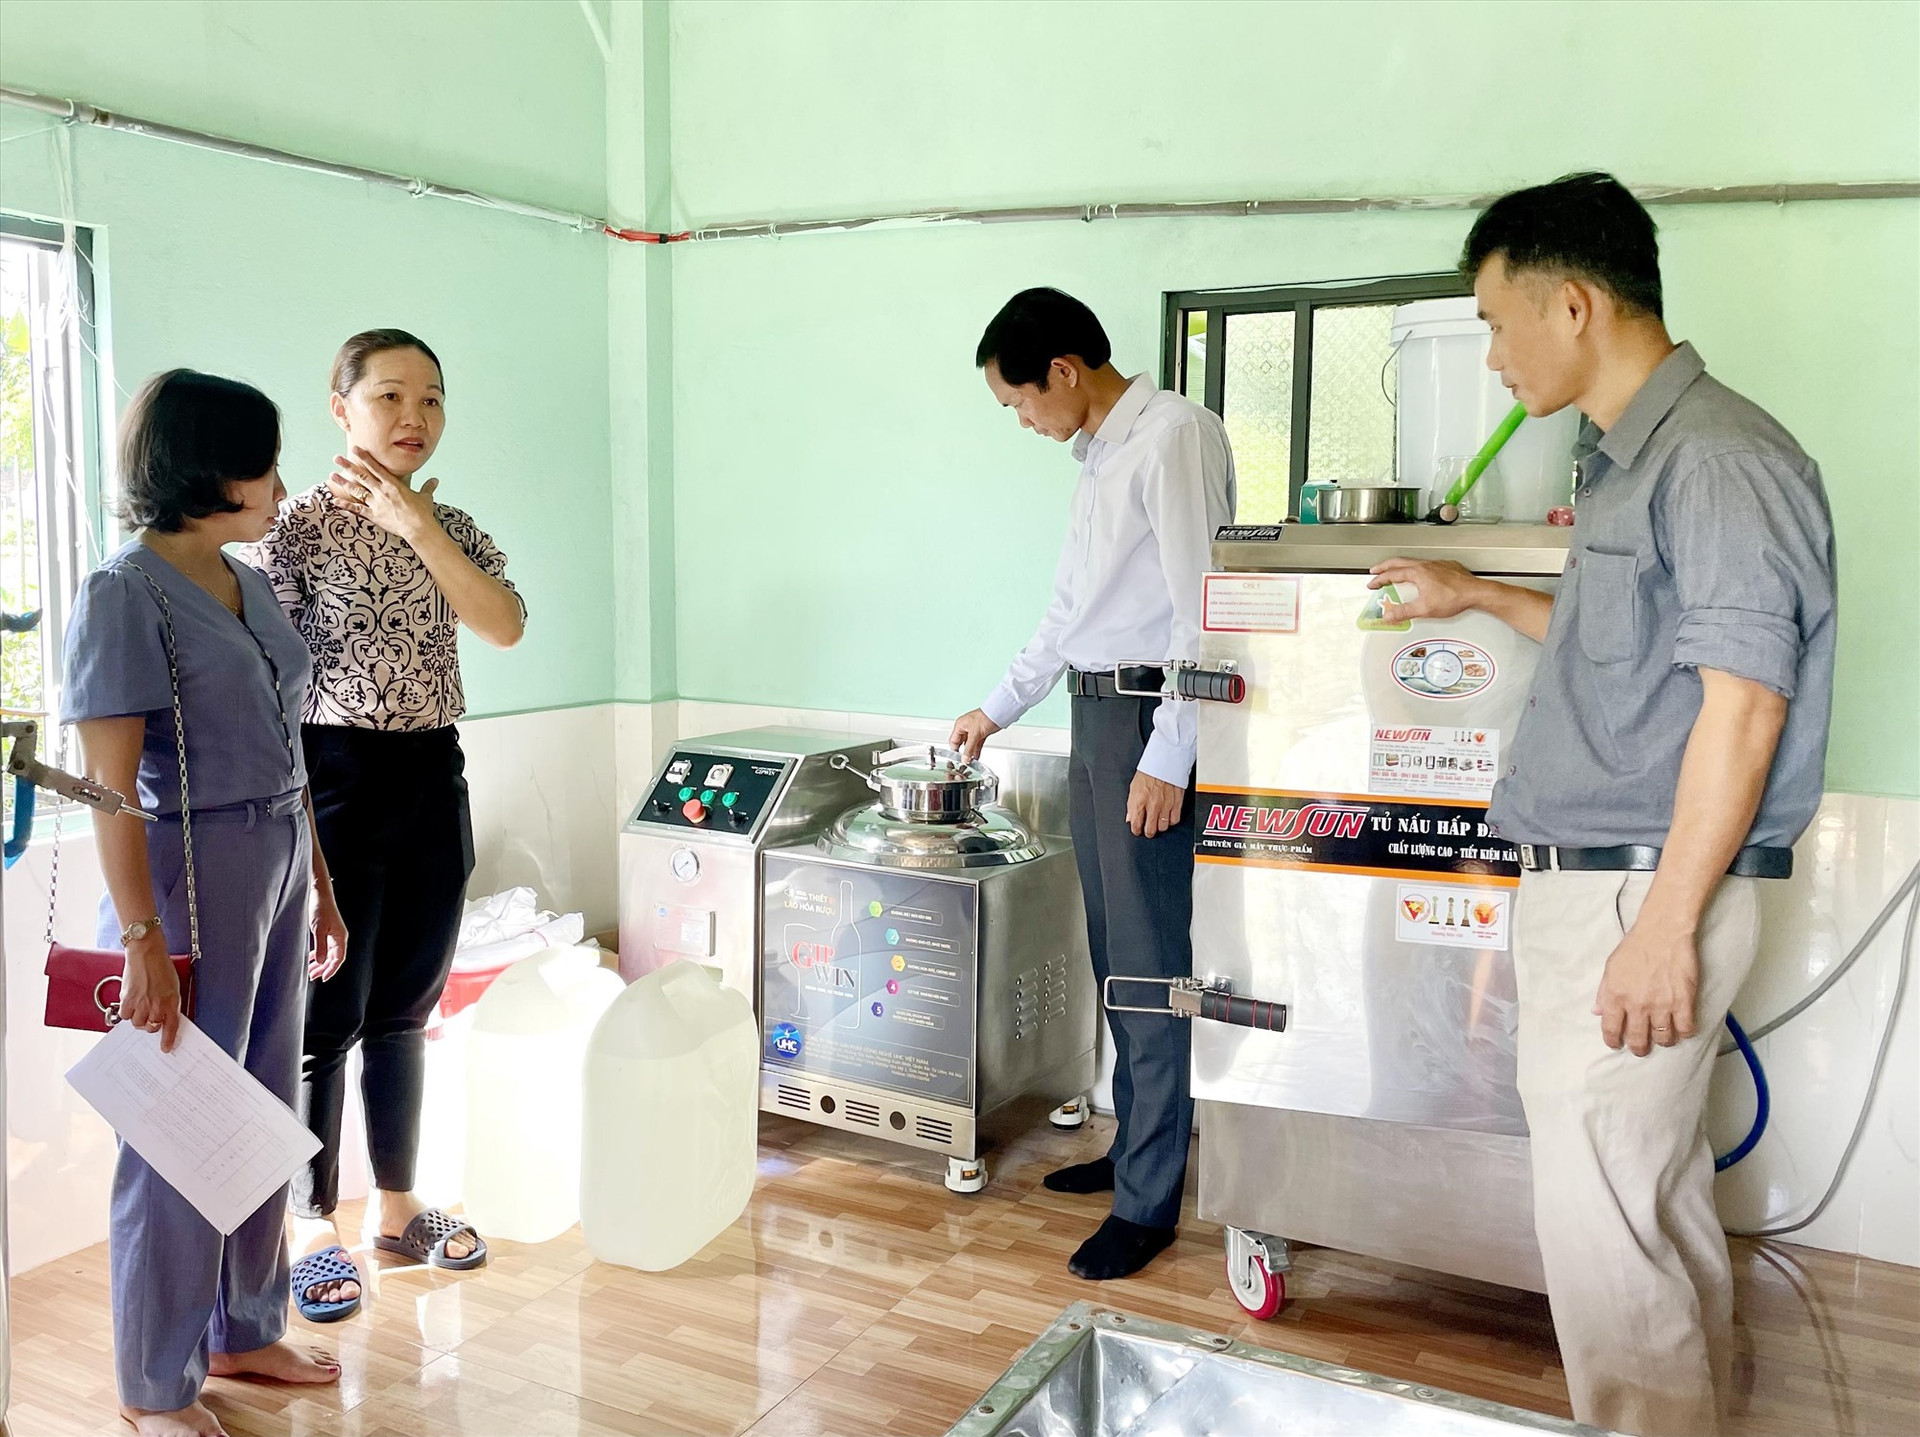 Nghiệm thu máy móc tại Hợp tác xã Dịch vụ nông nghiệp xanh Nông Sơn (thôn Trung Phước 2, xã Quế Trung, Nông Sơn). Ảnh: TÂM THÔNG